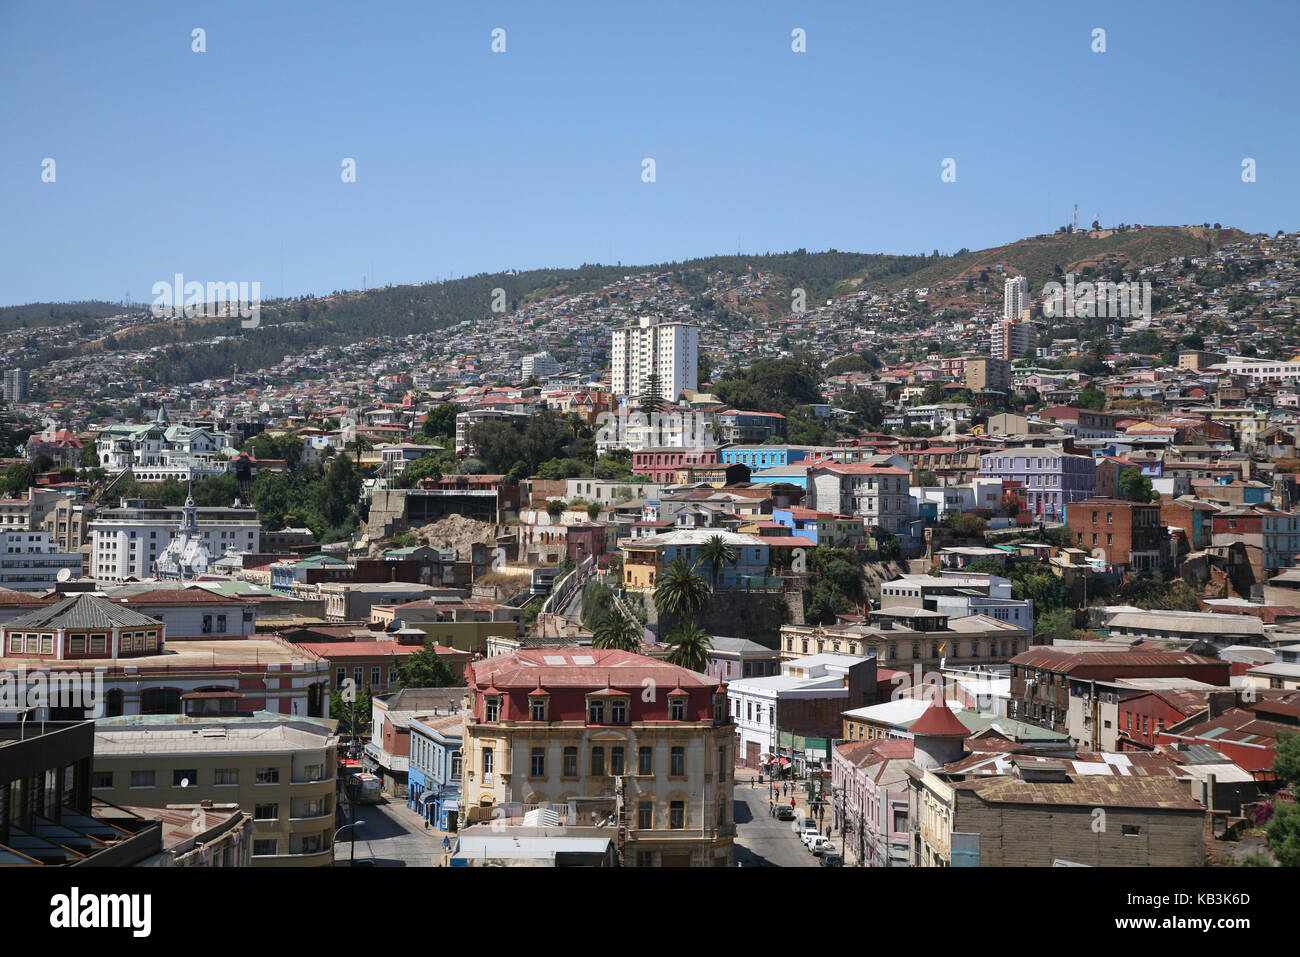 Chile, Valparaiso, town view, Stock Photo